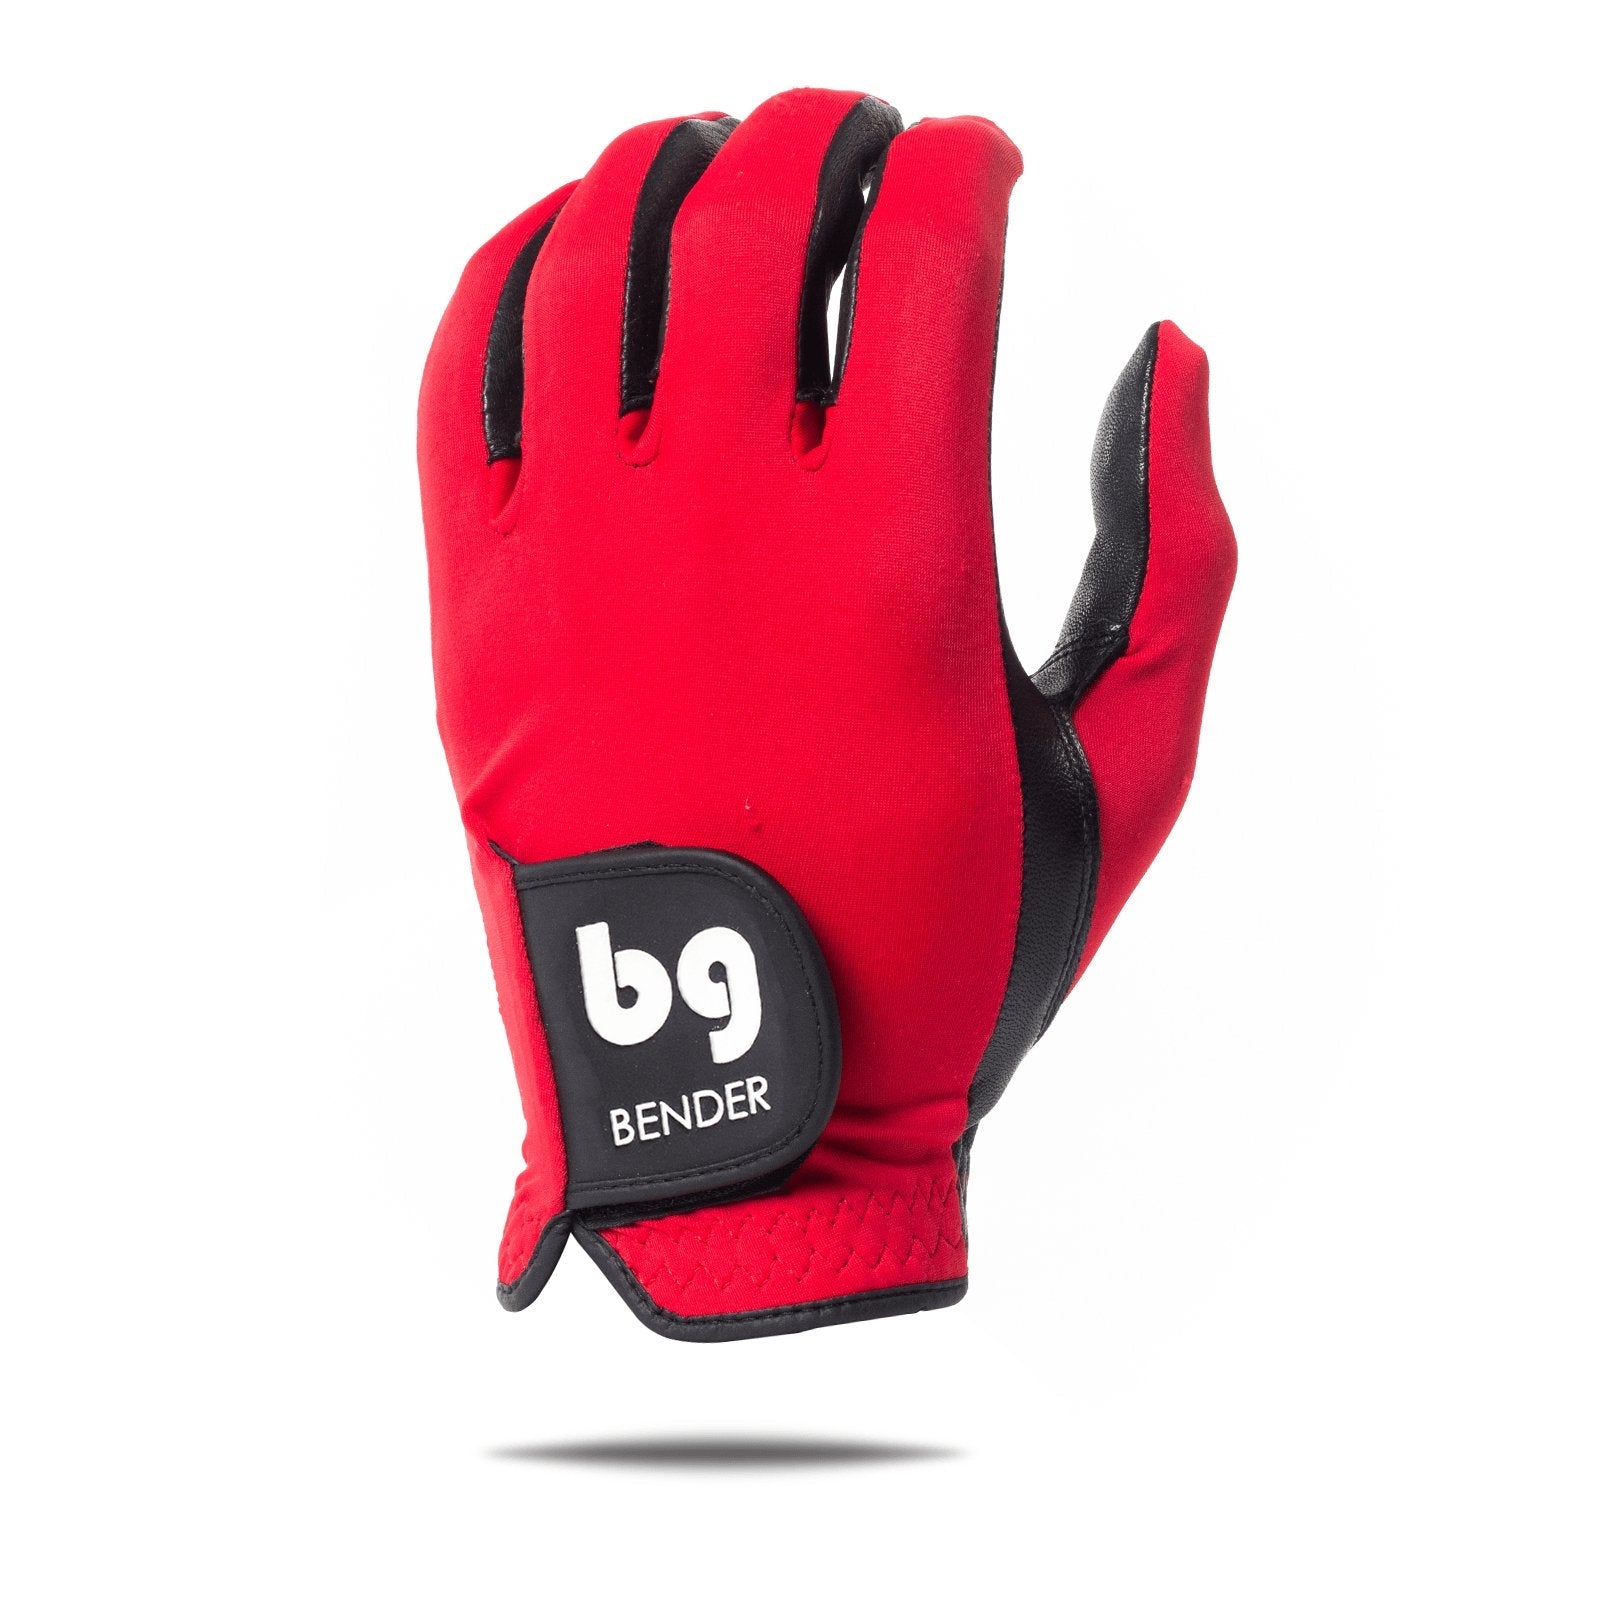 Red Spandex Golf Glove